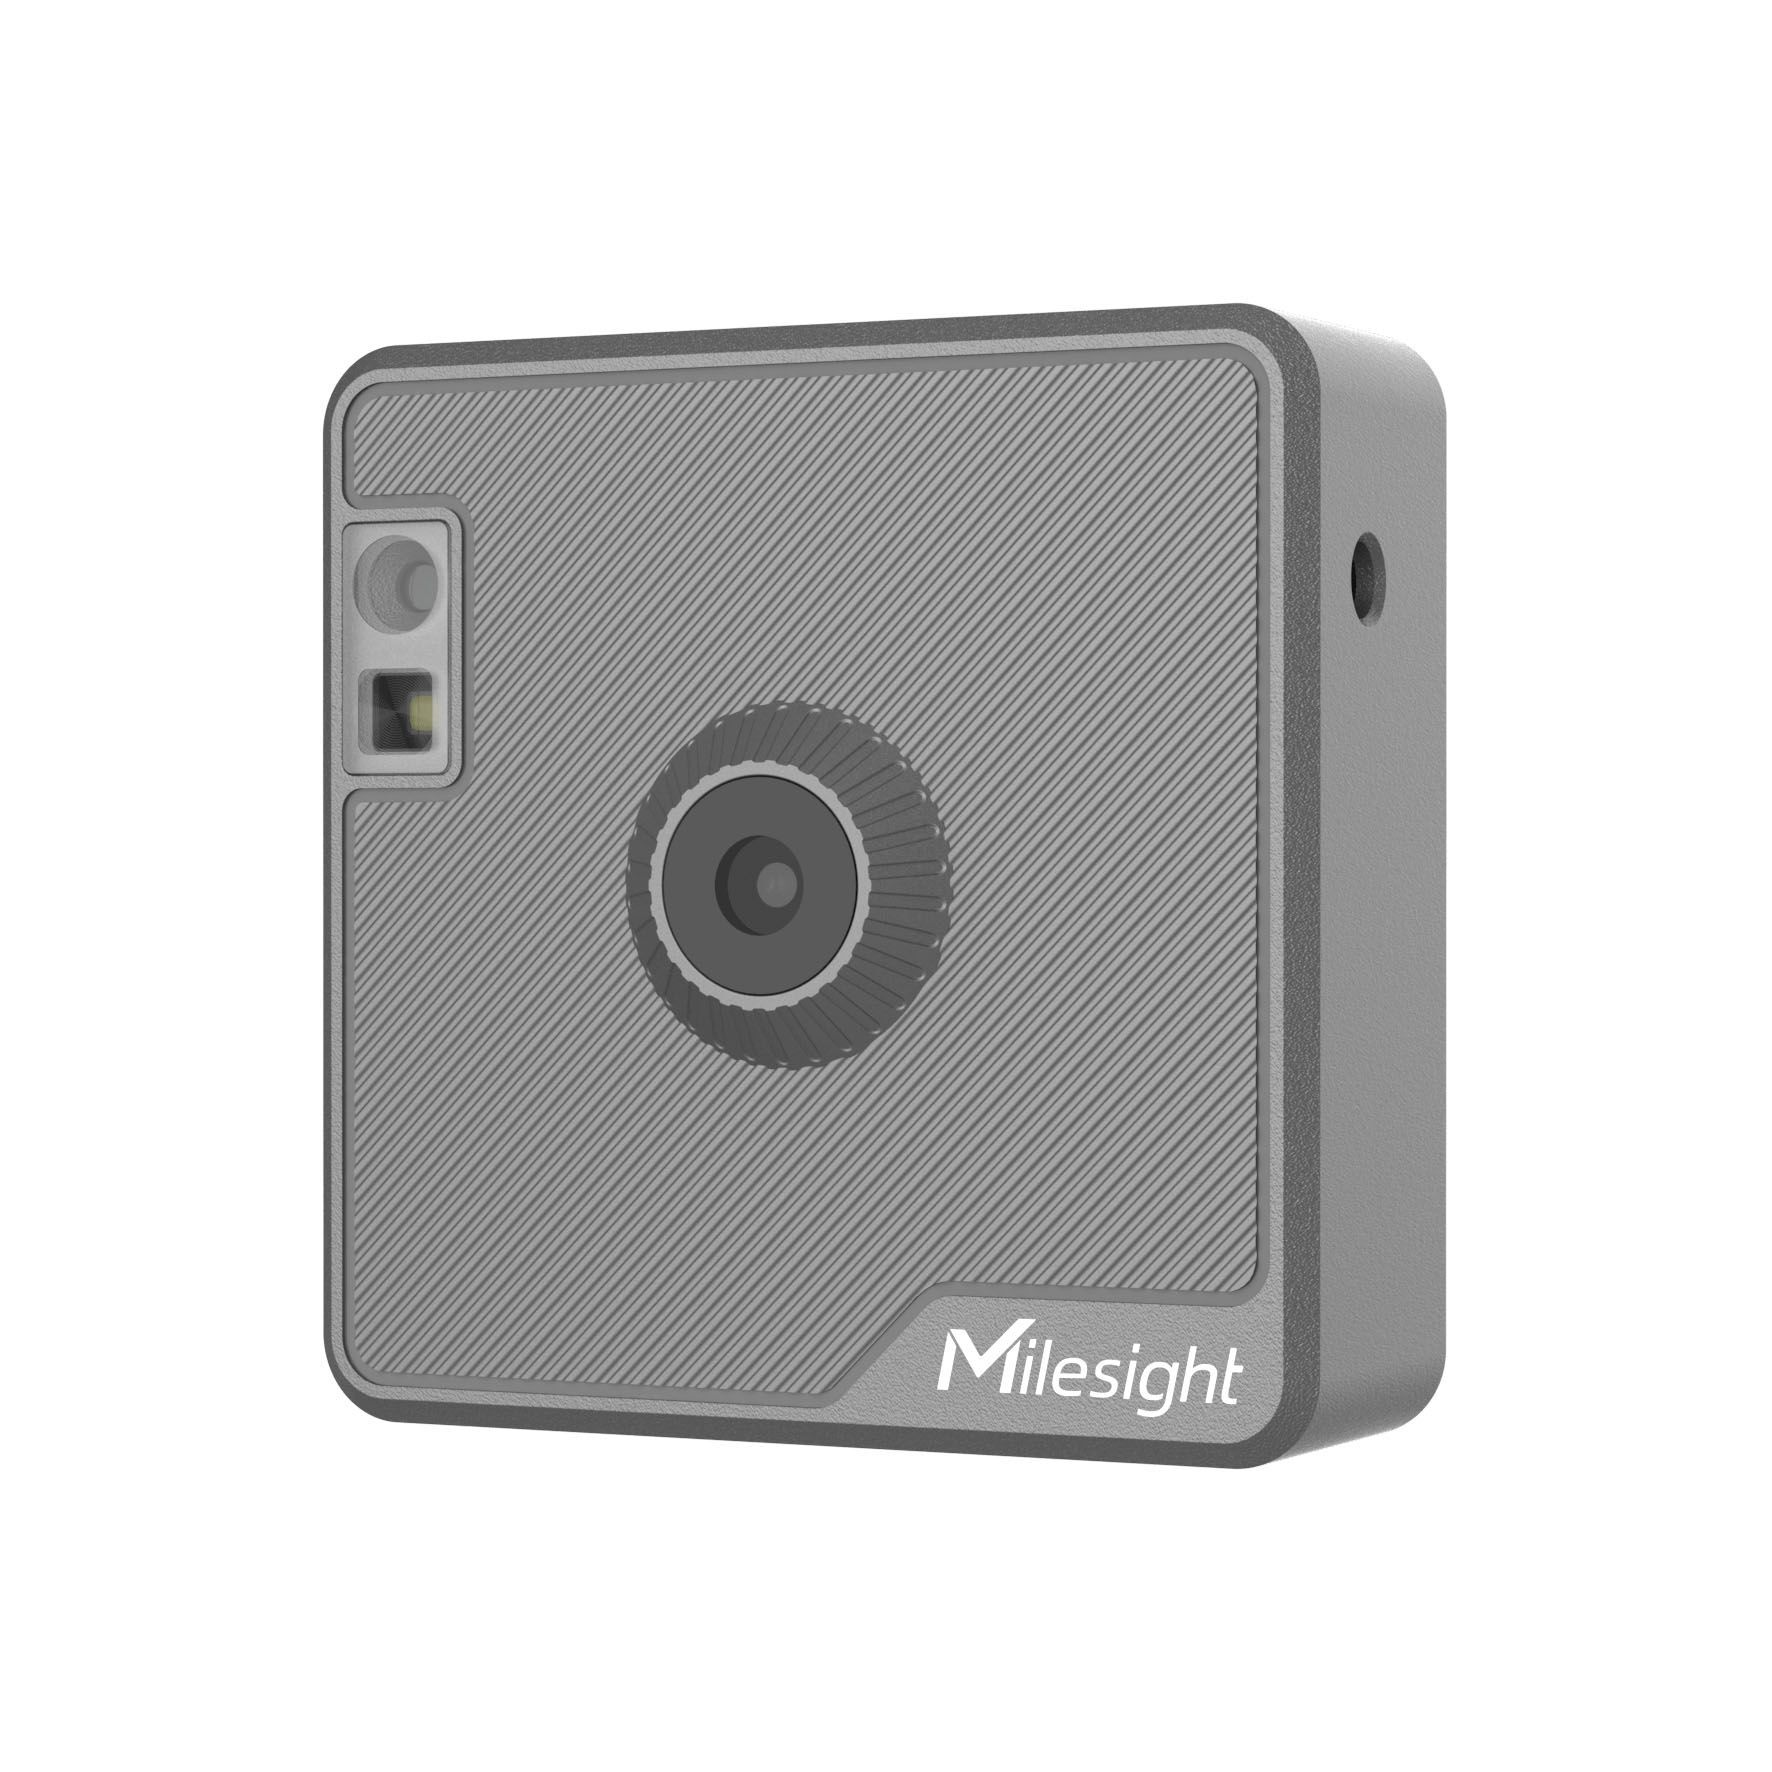 SC541 AIoT Wi-Fi MGTT kamera pro inspekční snímaní